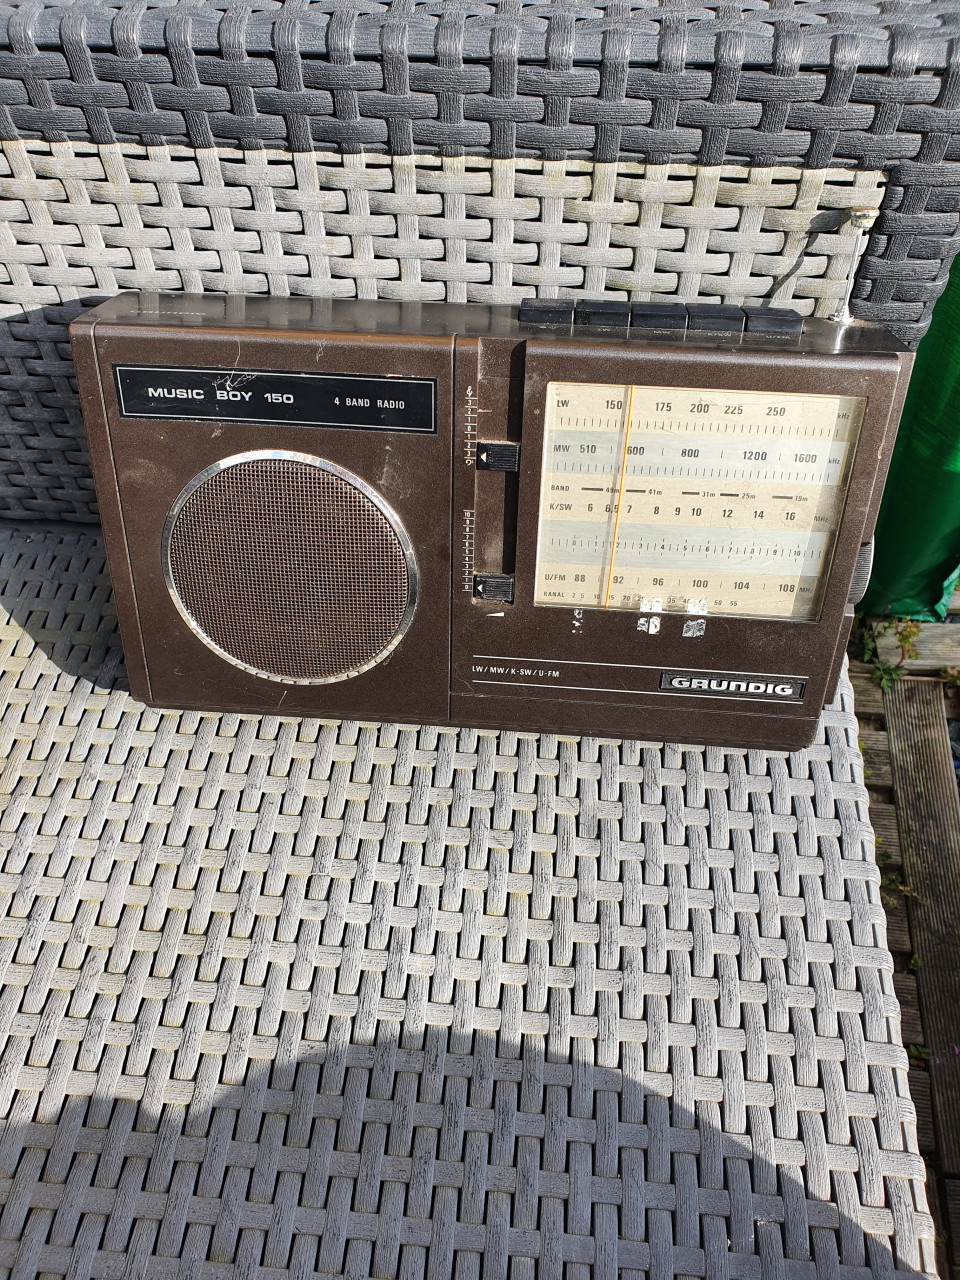 Mooie vintage Grundig music boy radio 150, in werkende staat...